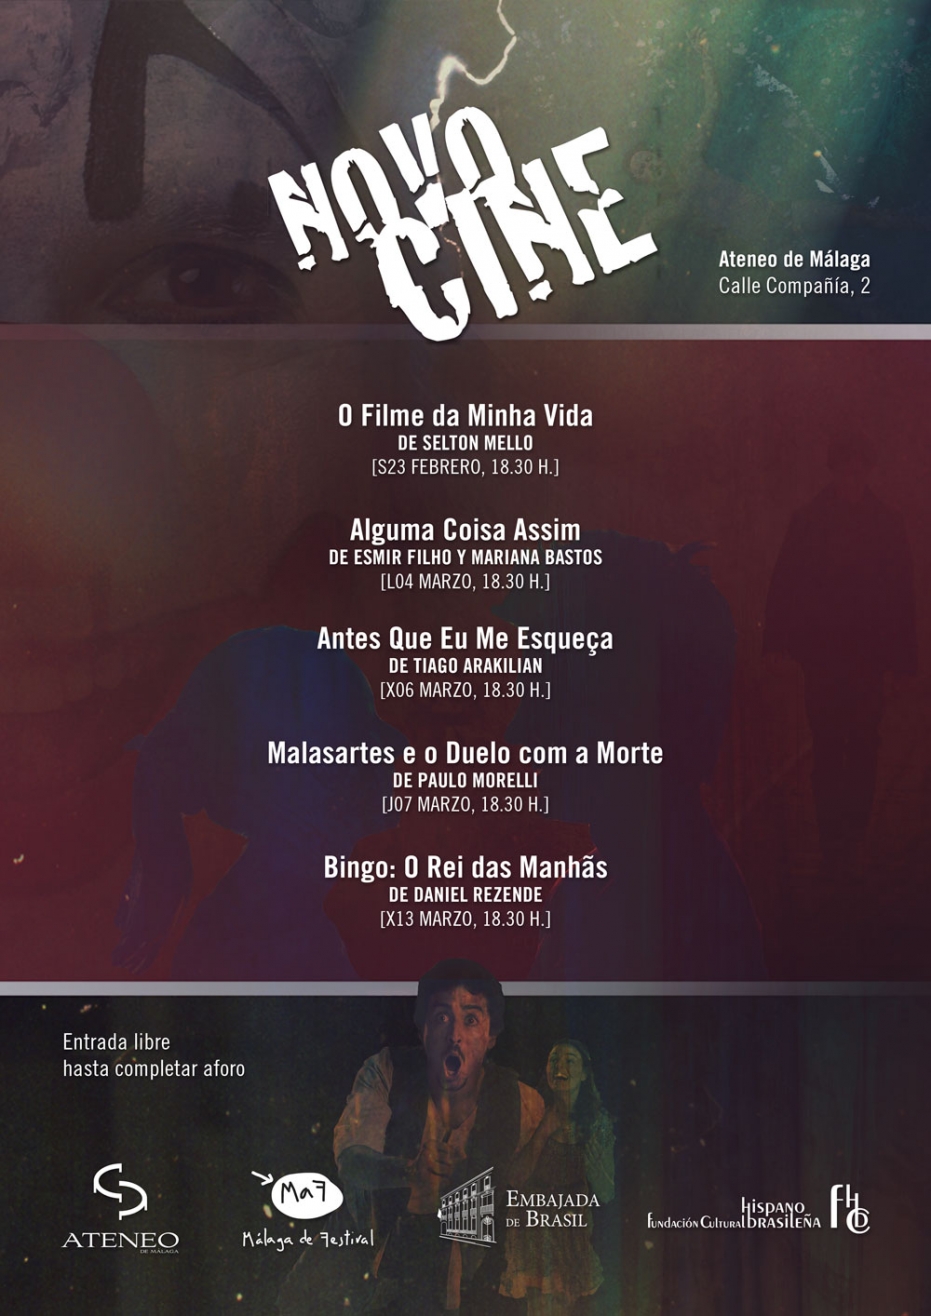 II Ciclo de Cine Novocine: proyección de 'Alguma Coisa Assim', de Esmir Filho y Mariana Bastos. En colaboración con la Embajada de Brasil y la Fundación Cultural Hispano Brasileña